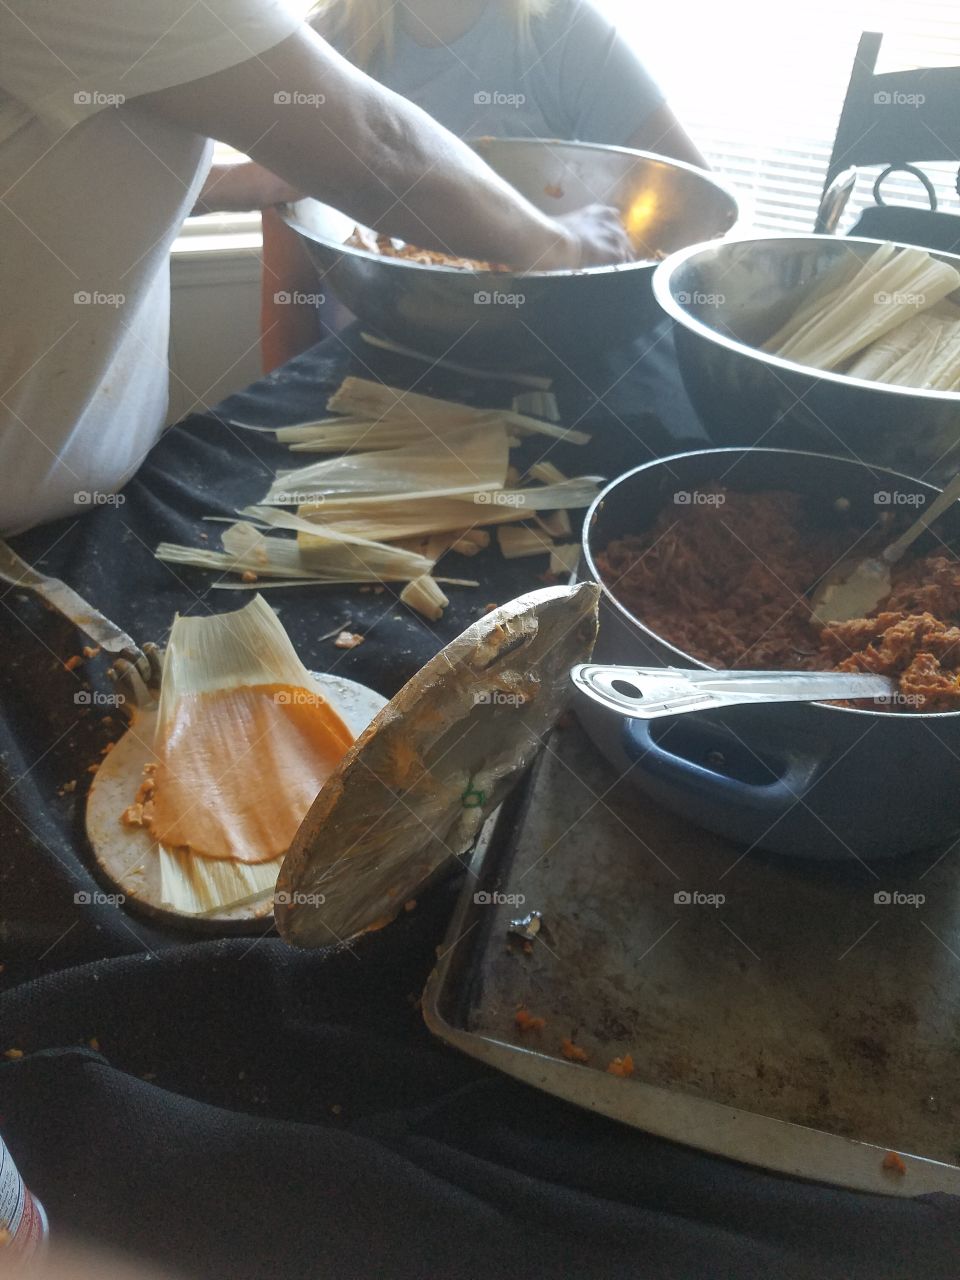 authentic tamales